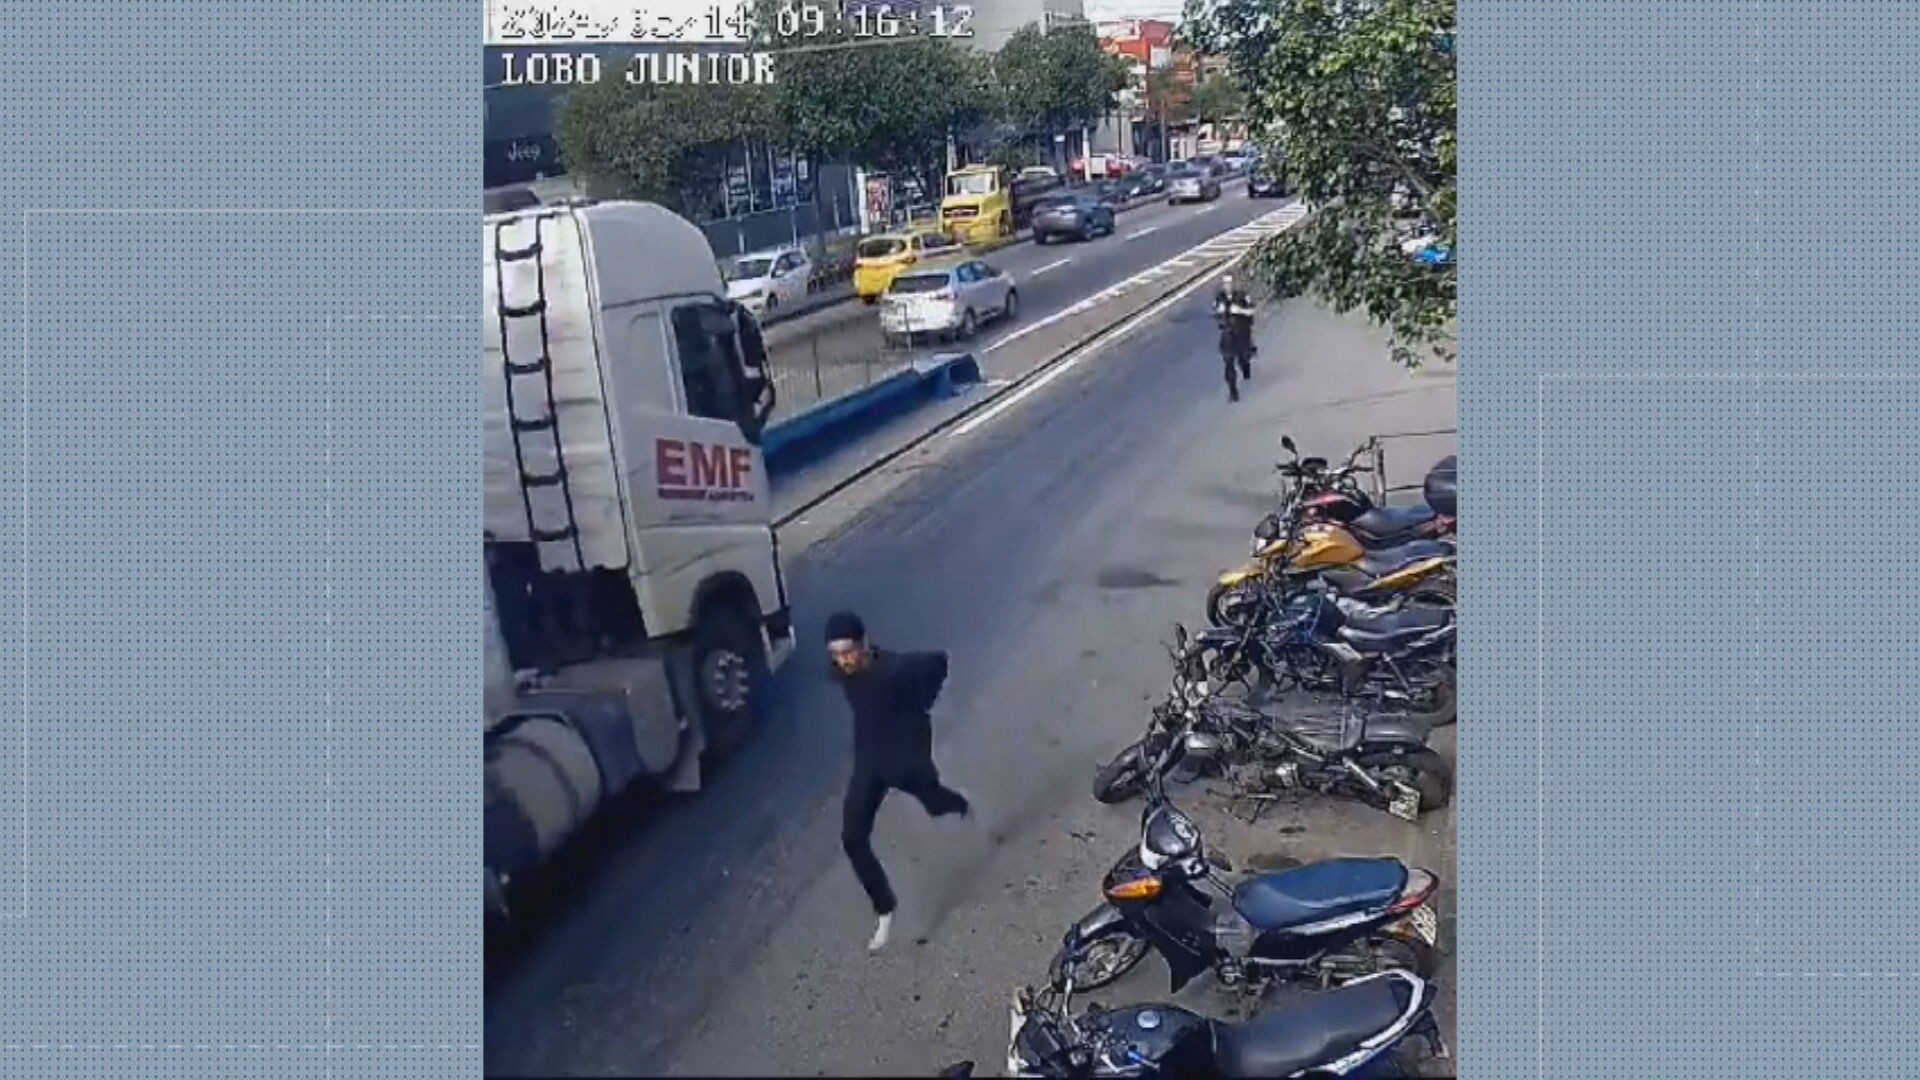 VÍDEO: algemado, preso tenta escapar de delegacia e corre por ruas da Penha, mas é recapturado